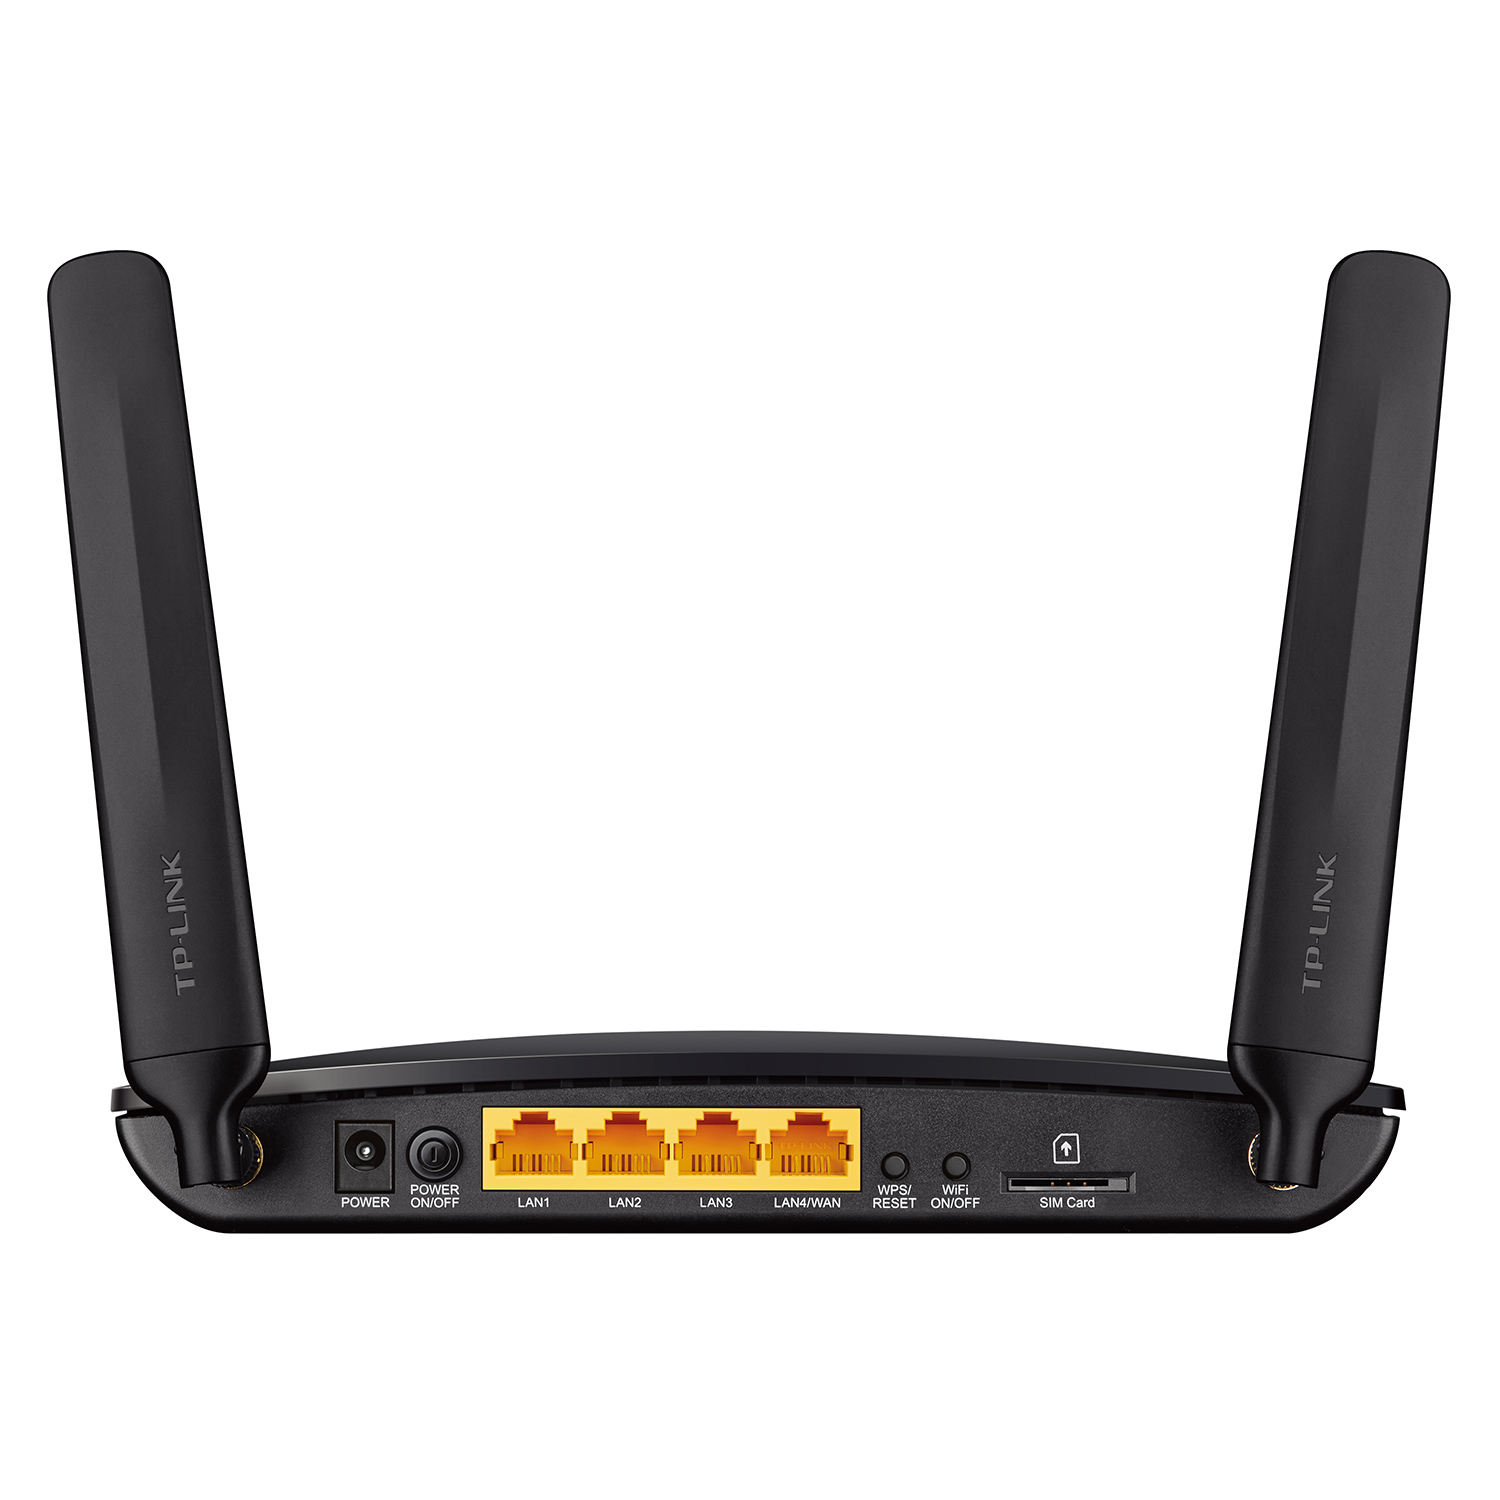 Bộ Phát Wifi Router 4G LTE Băng Tần Kép AC750 TP-Link Archer MR200 - Hàng Chính Hãng